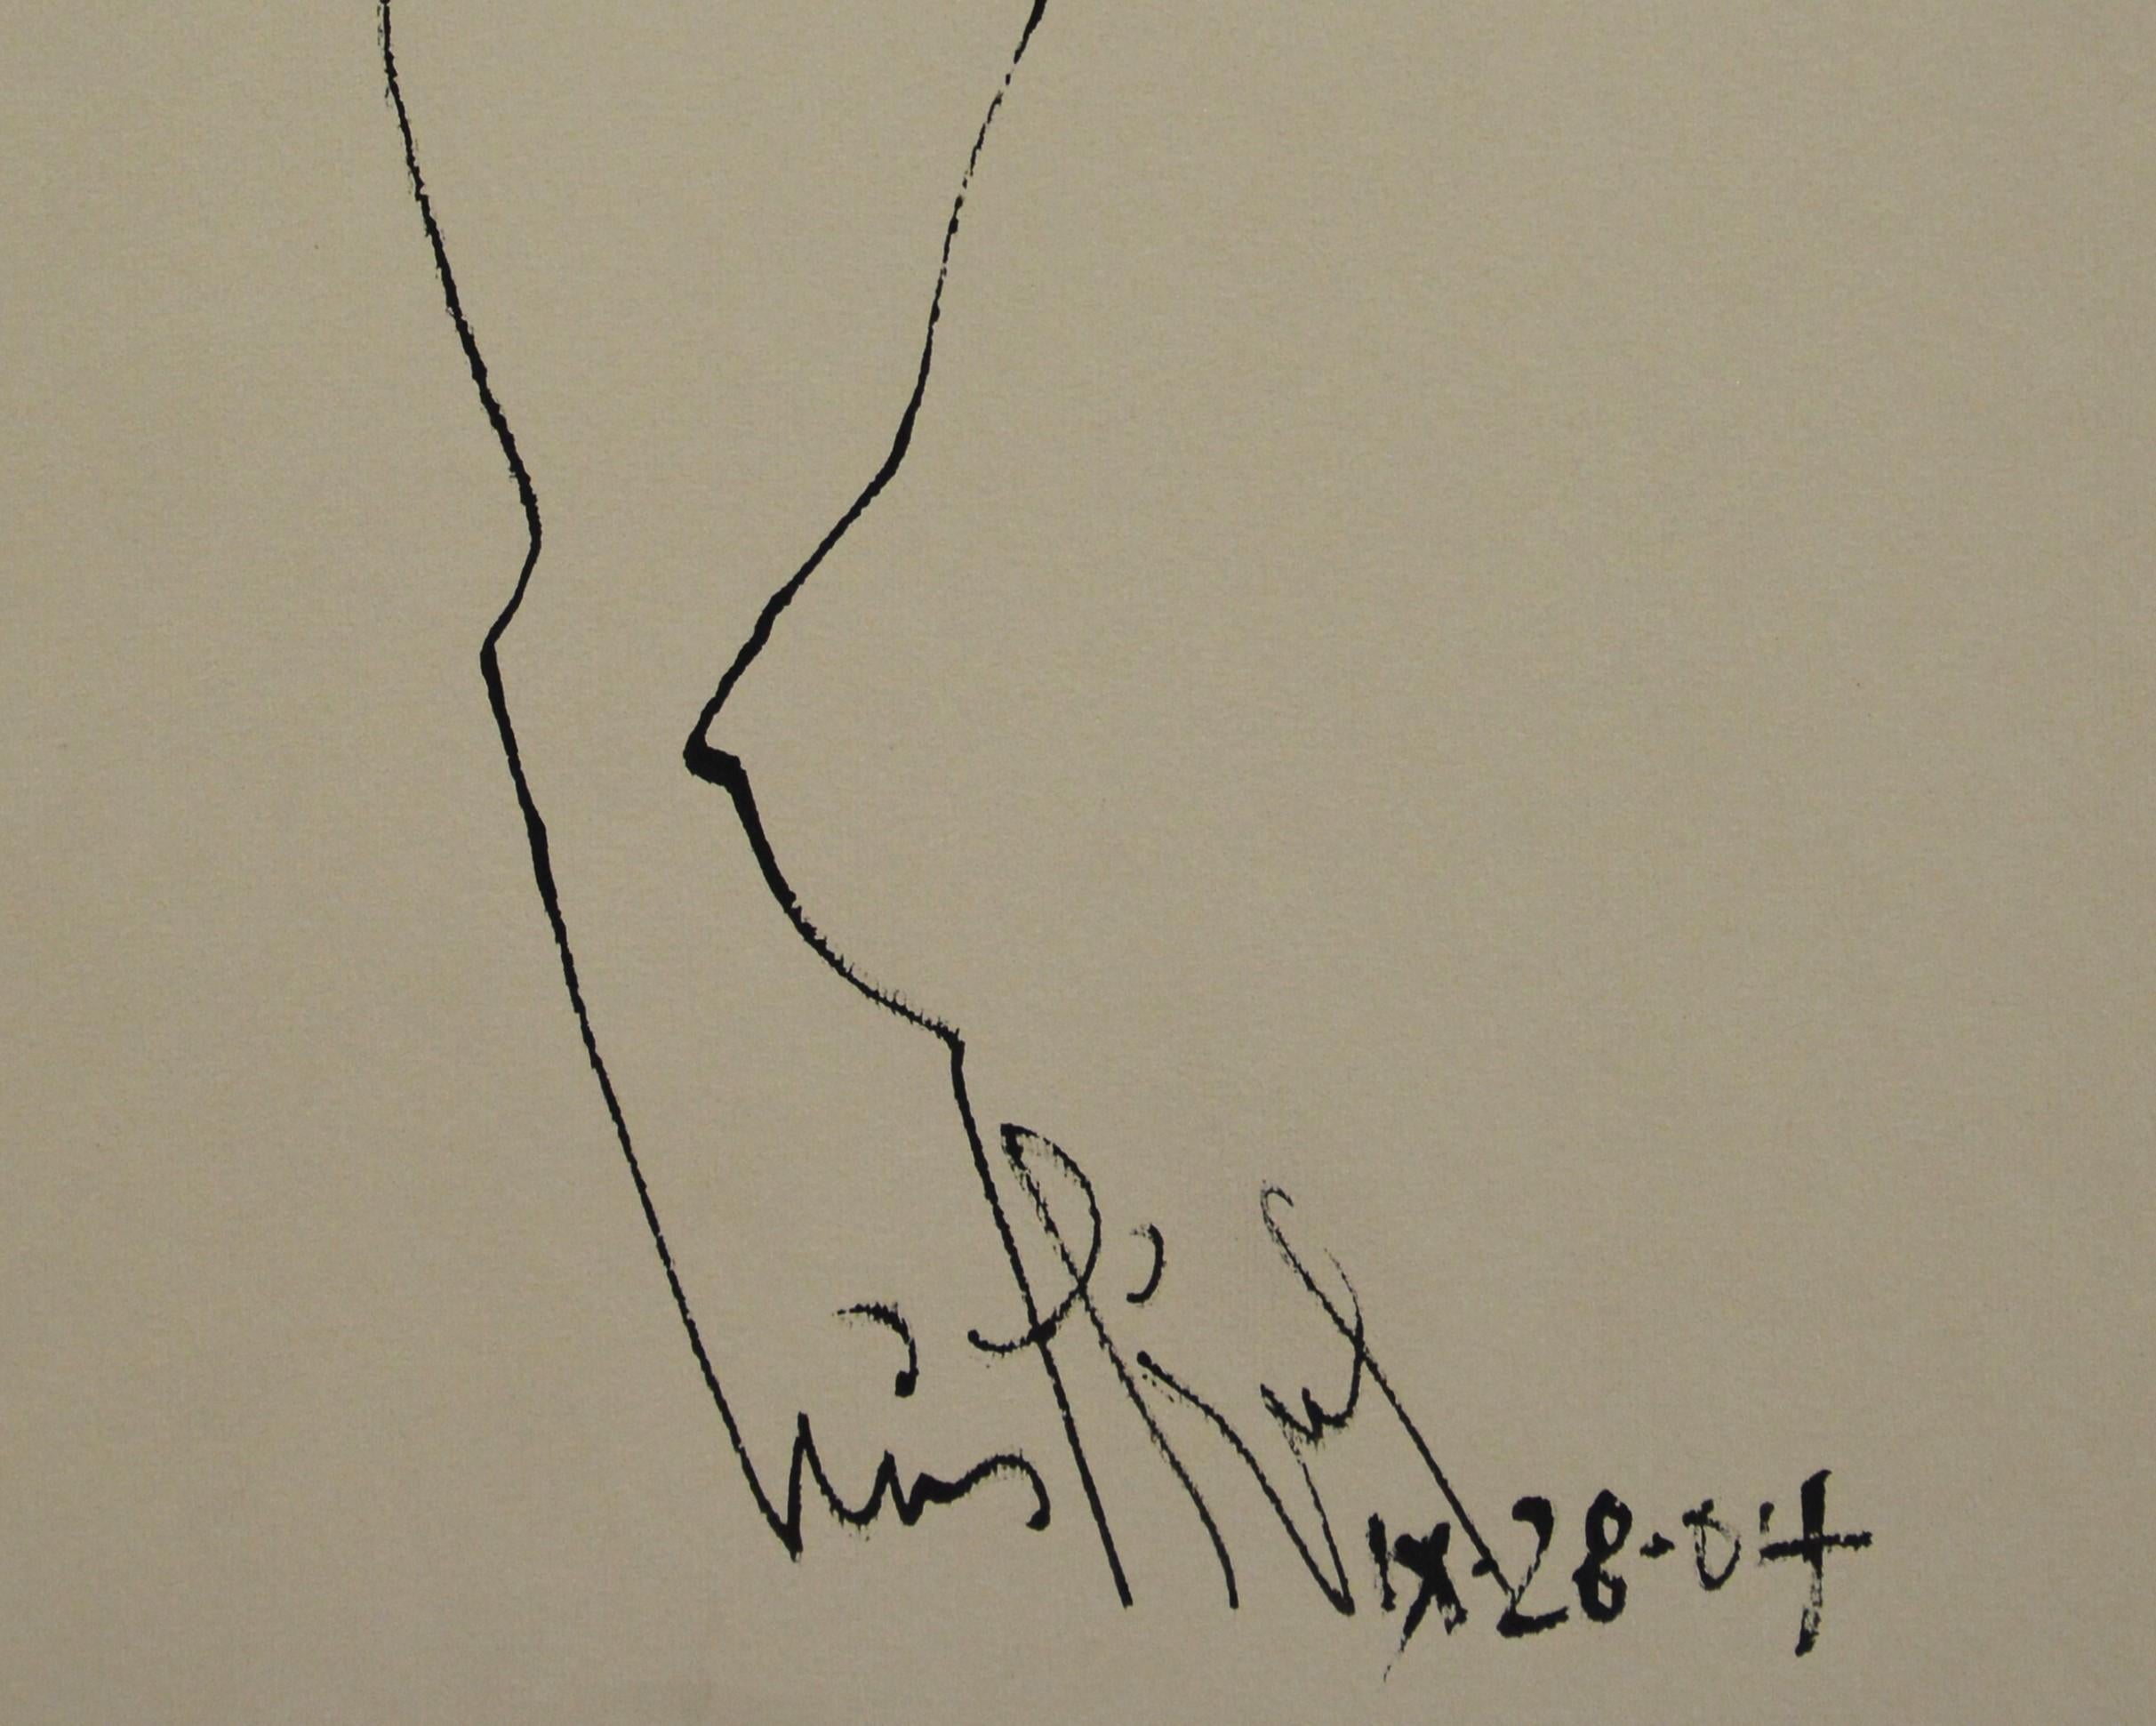 Luis Miguel Valdes, ¨Linea con cara-3¨, 2004, Work on paper, 11.8x13.8 in - Contemporary Art by Luis Miguel Valdes 